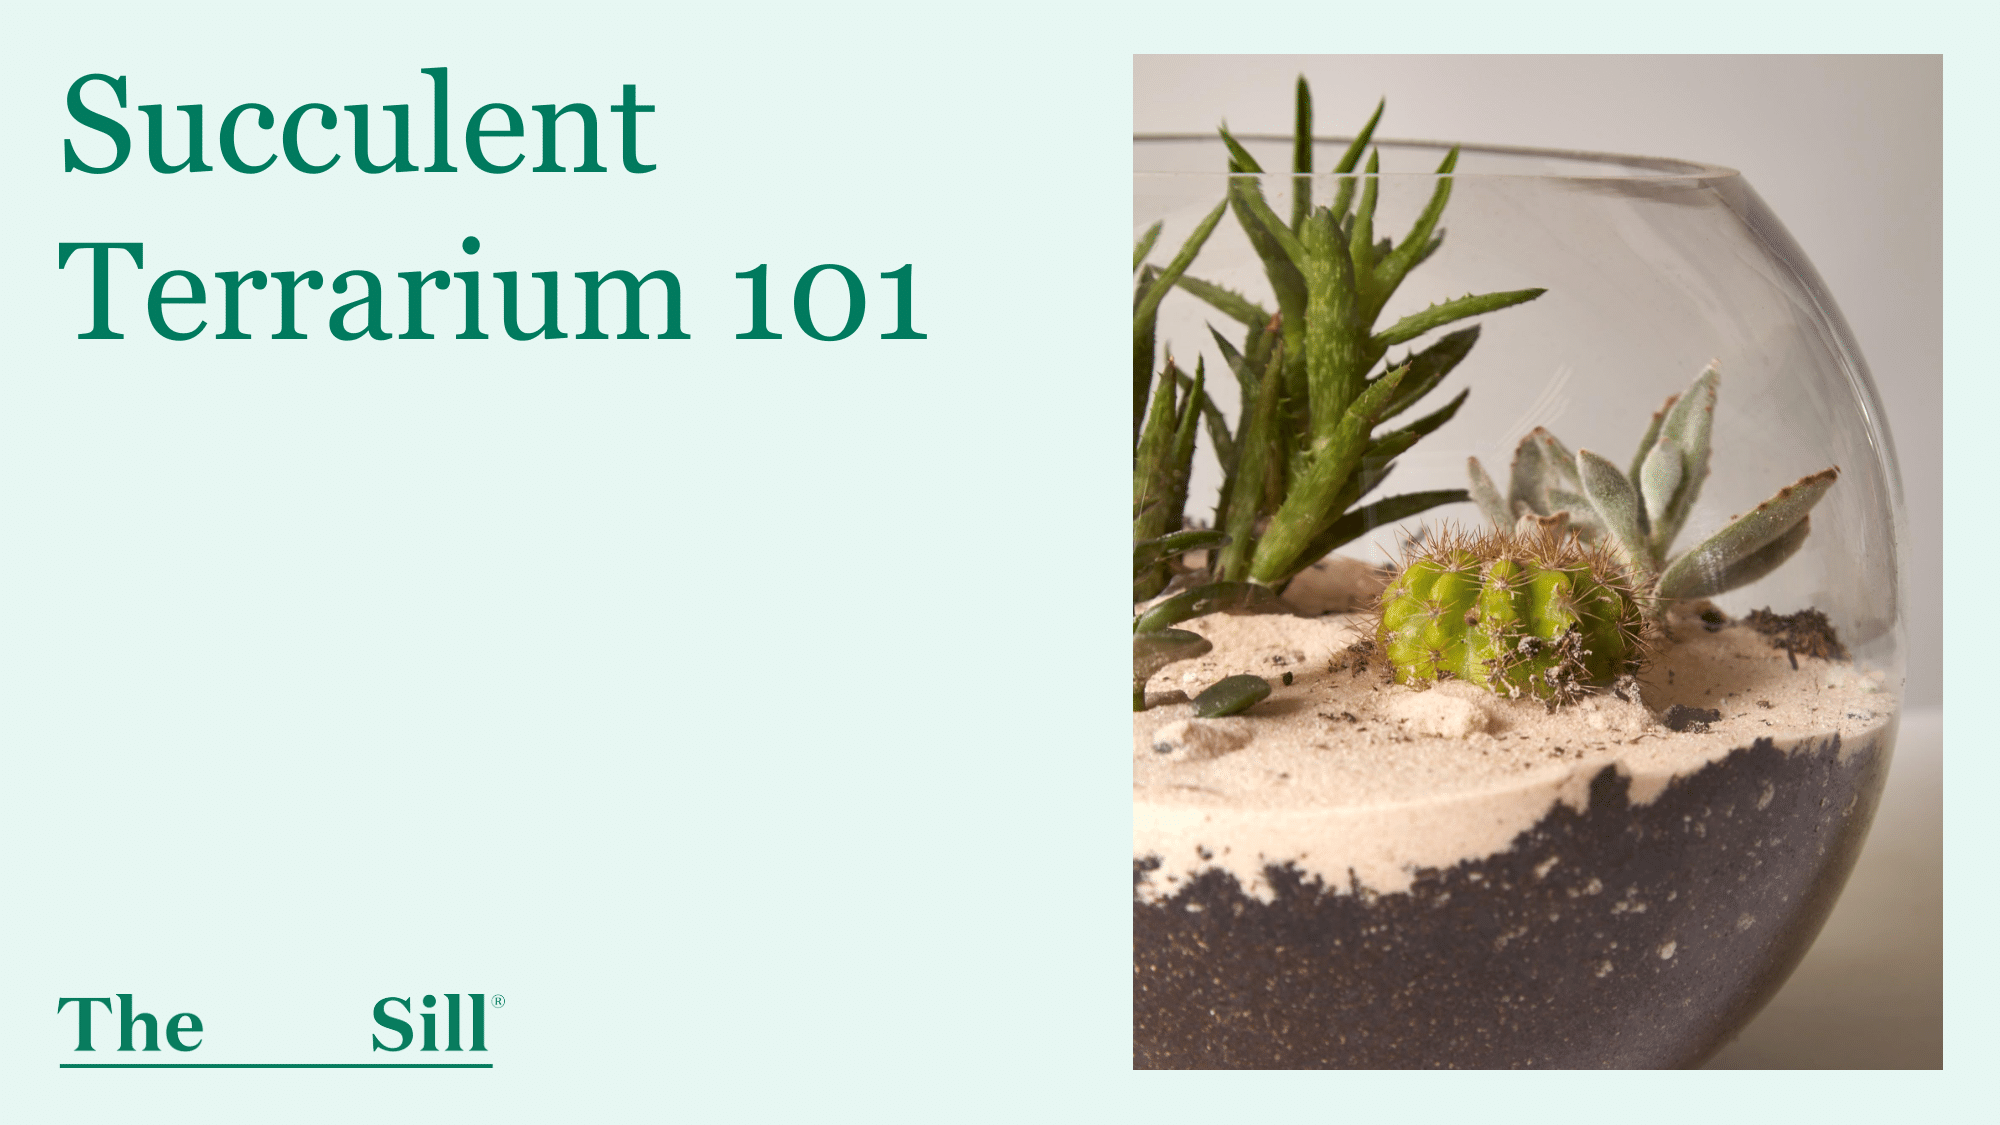 Succulent Terrarium 101